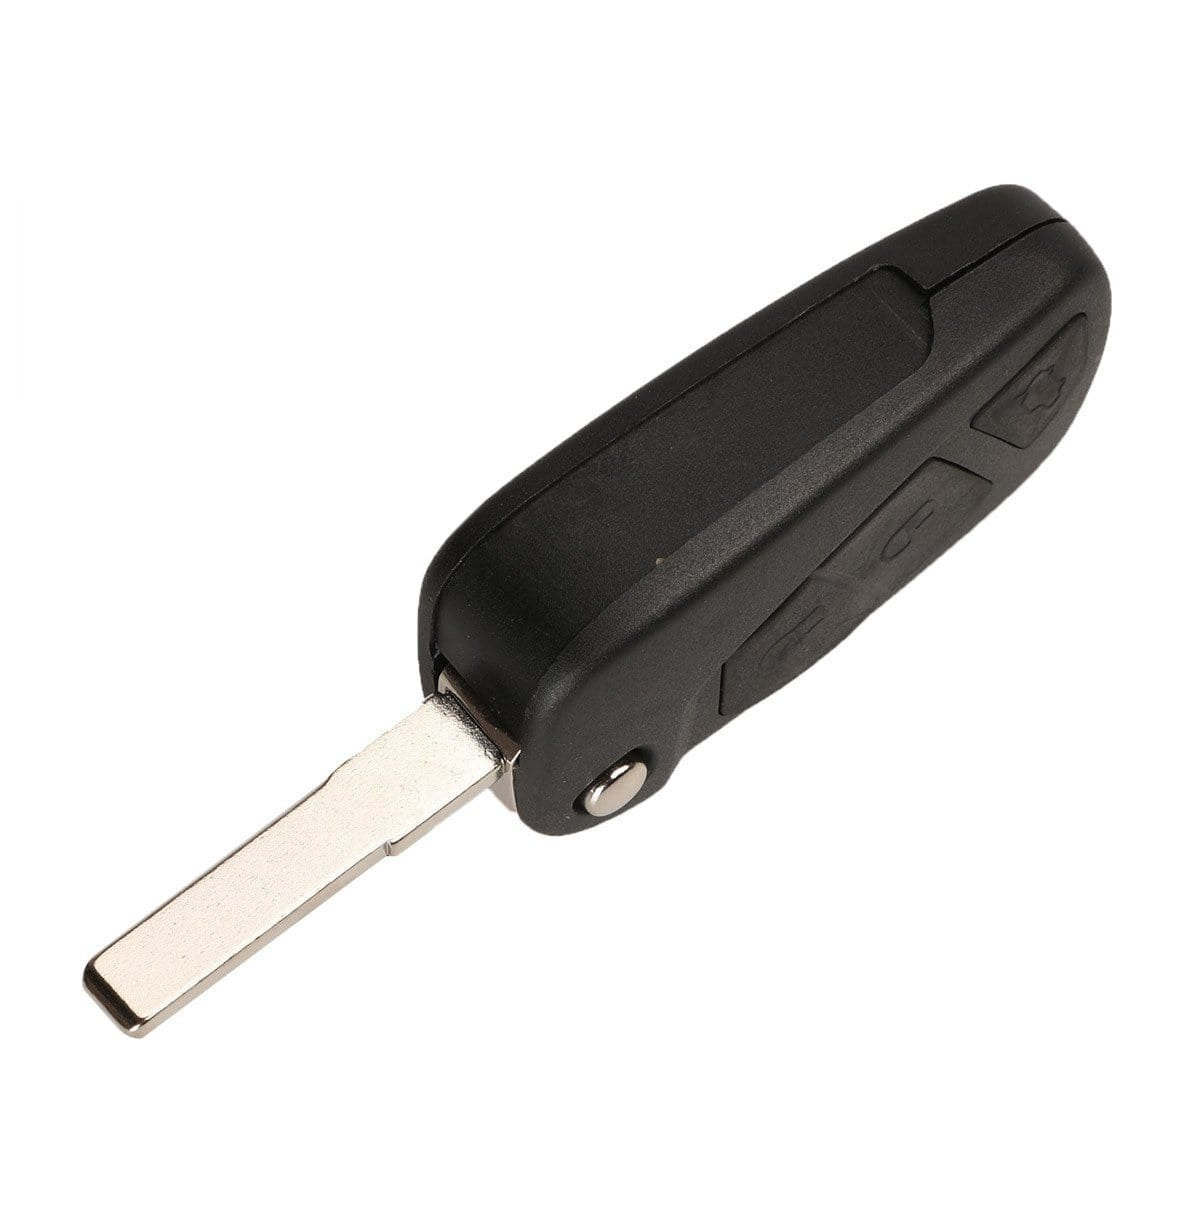 Fekete színű, 2 gombos Fiat kulcsház, bicskakulcs SIP22 kulcsszárral.